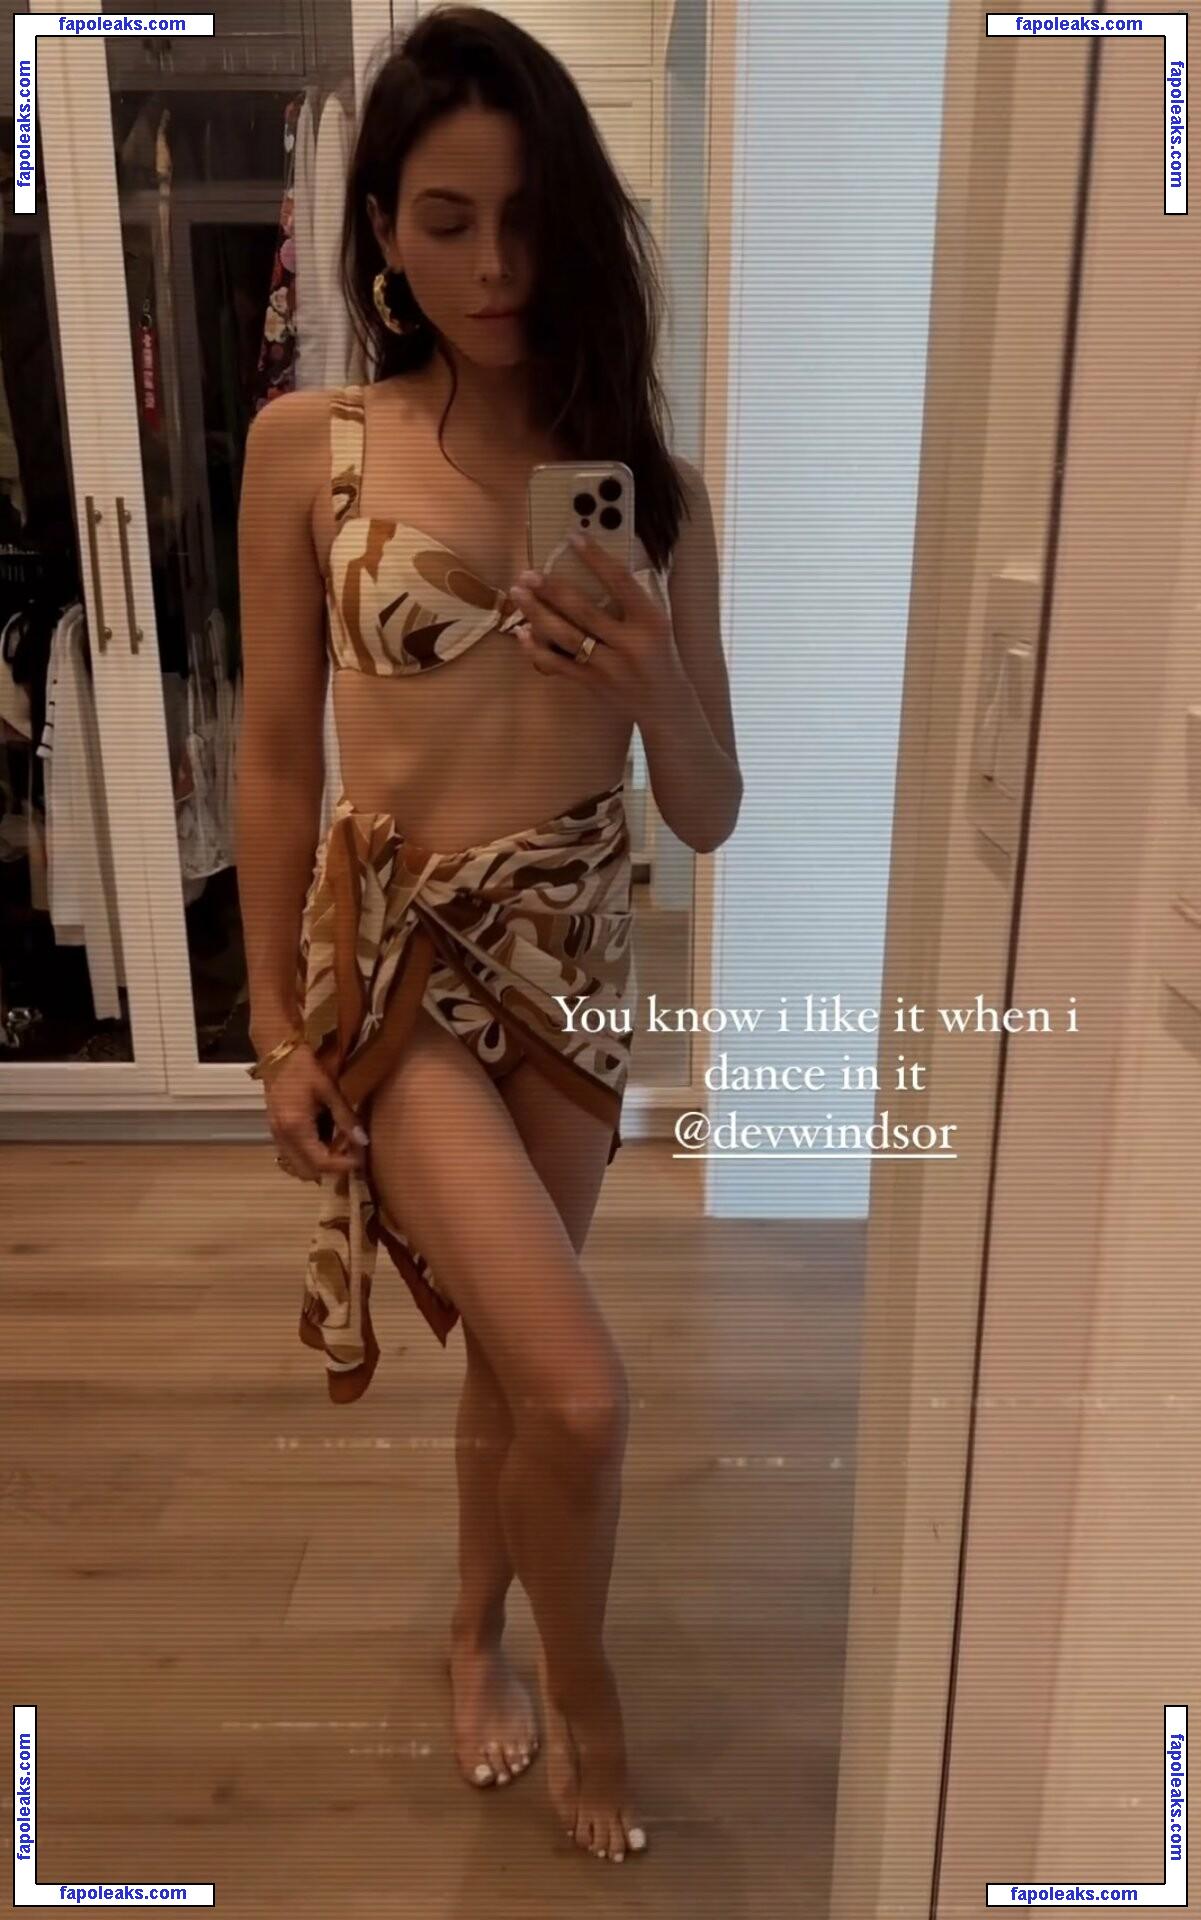 Jenna Dewan Tatum / jennadewan nude photo #0948 from OnlyFans